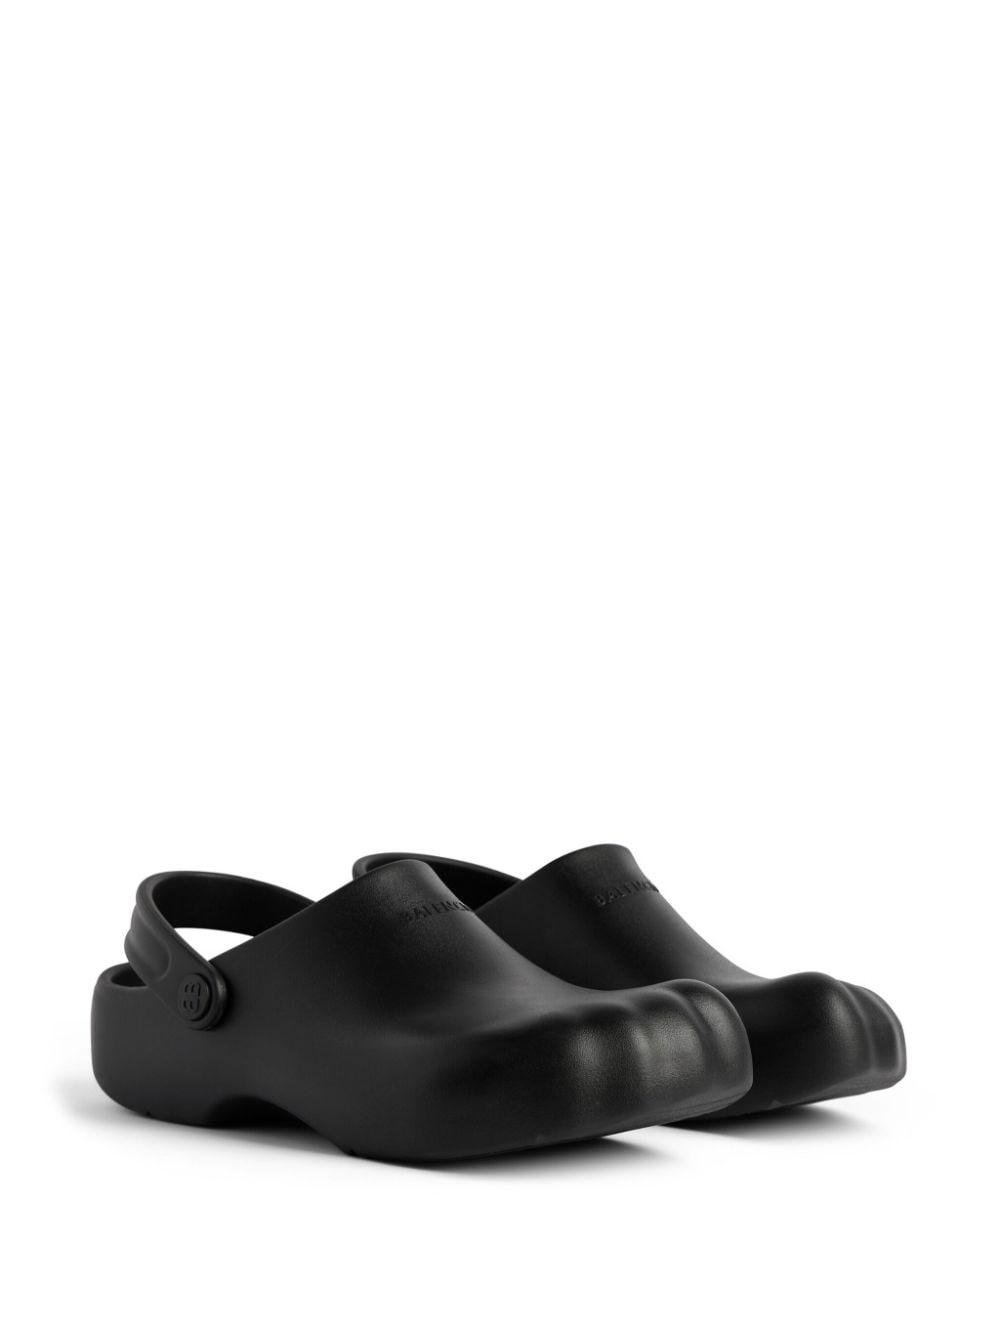 BALENCIAGA Men's Black Square Toe Molded Footbed Sandals